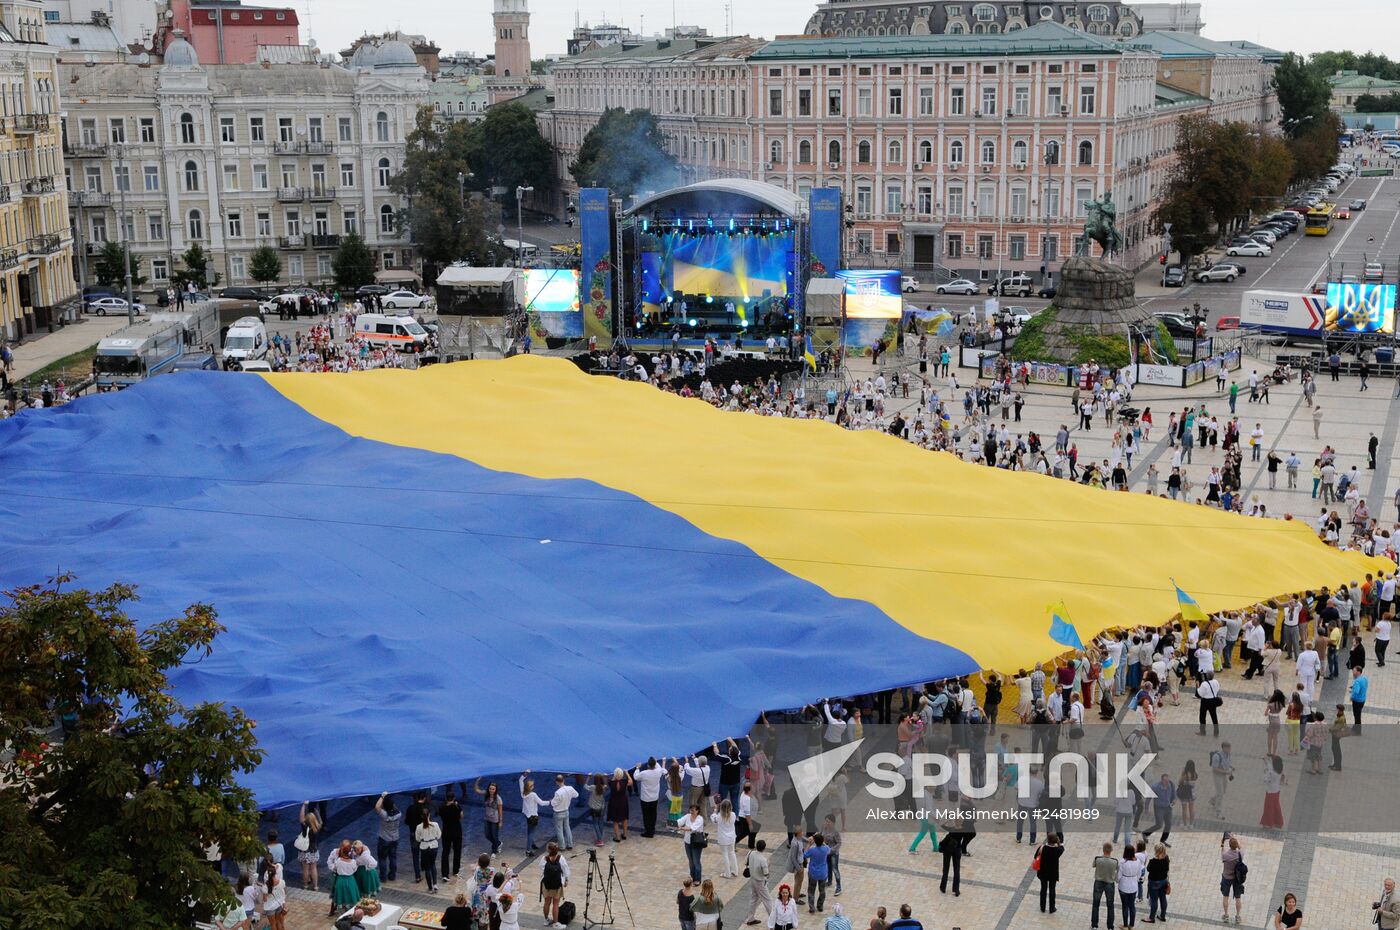 Ukraine celebrates Independence Day